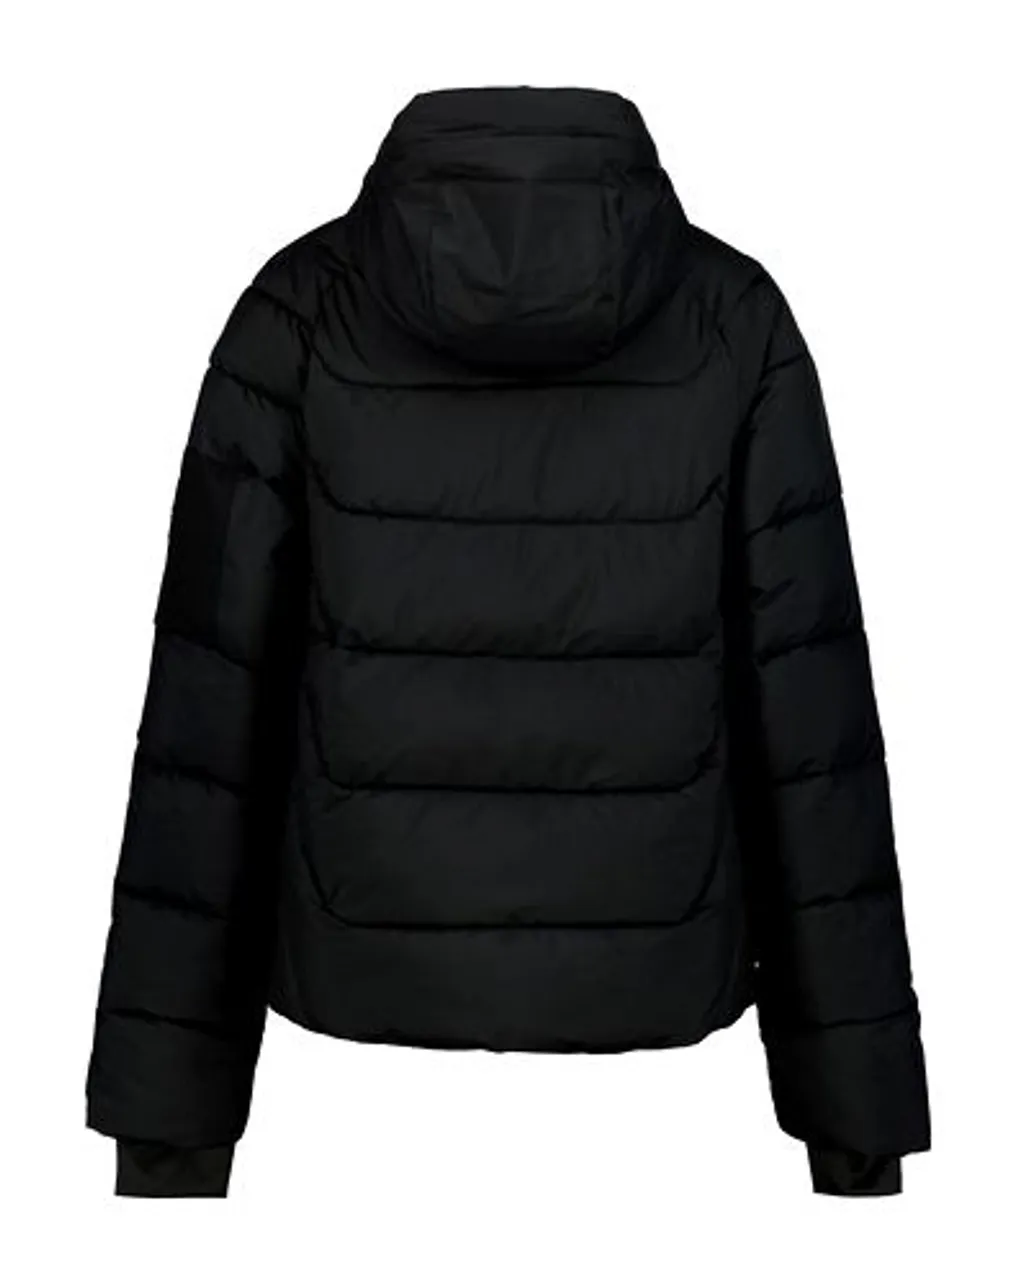 Icepeak eastport jacket -